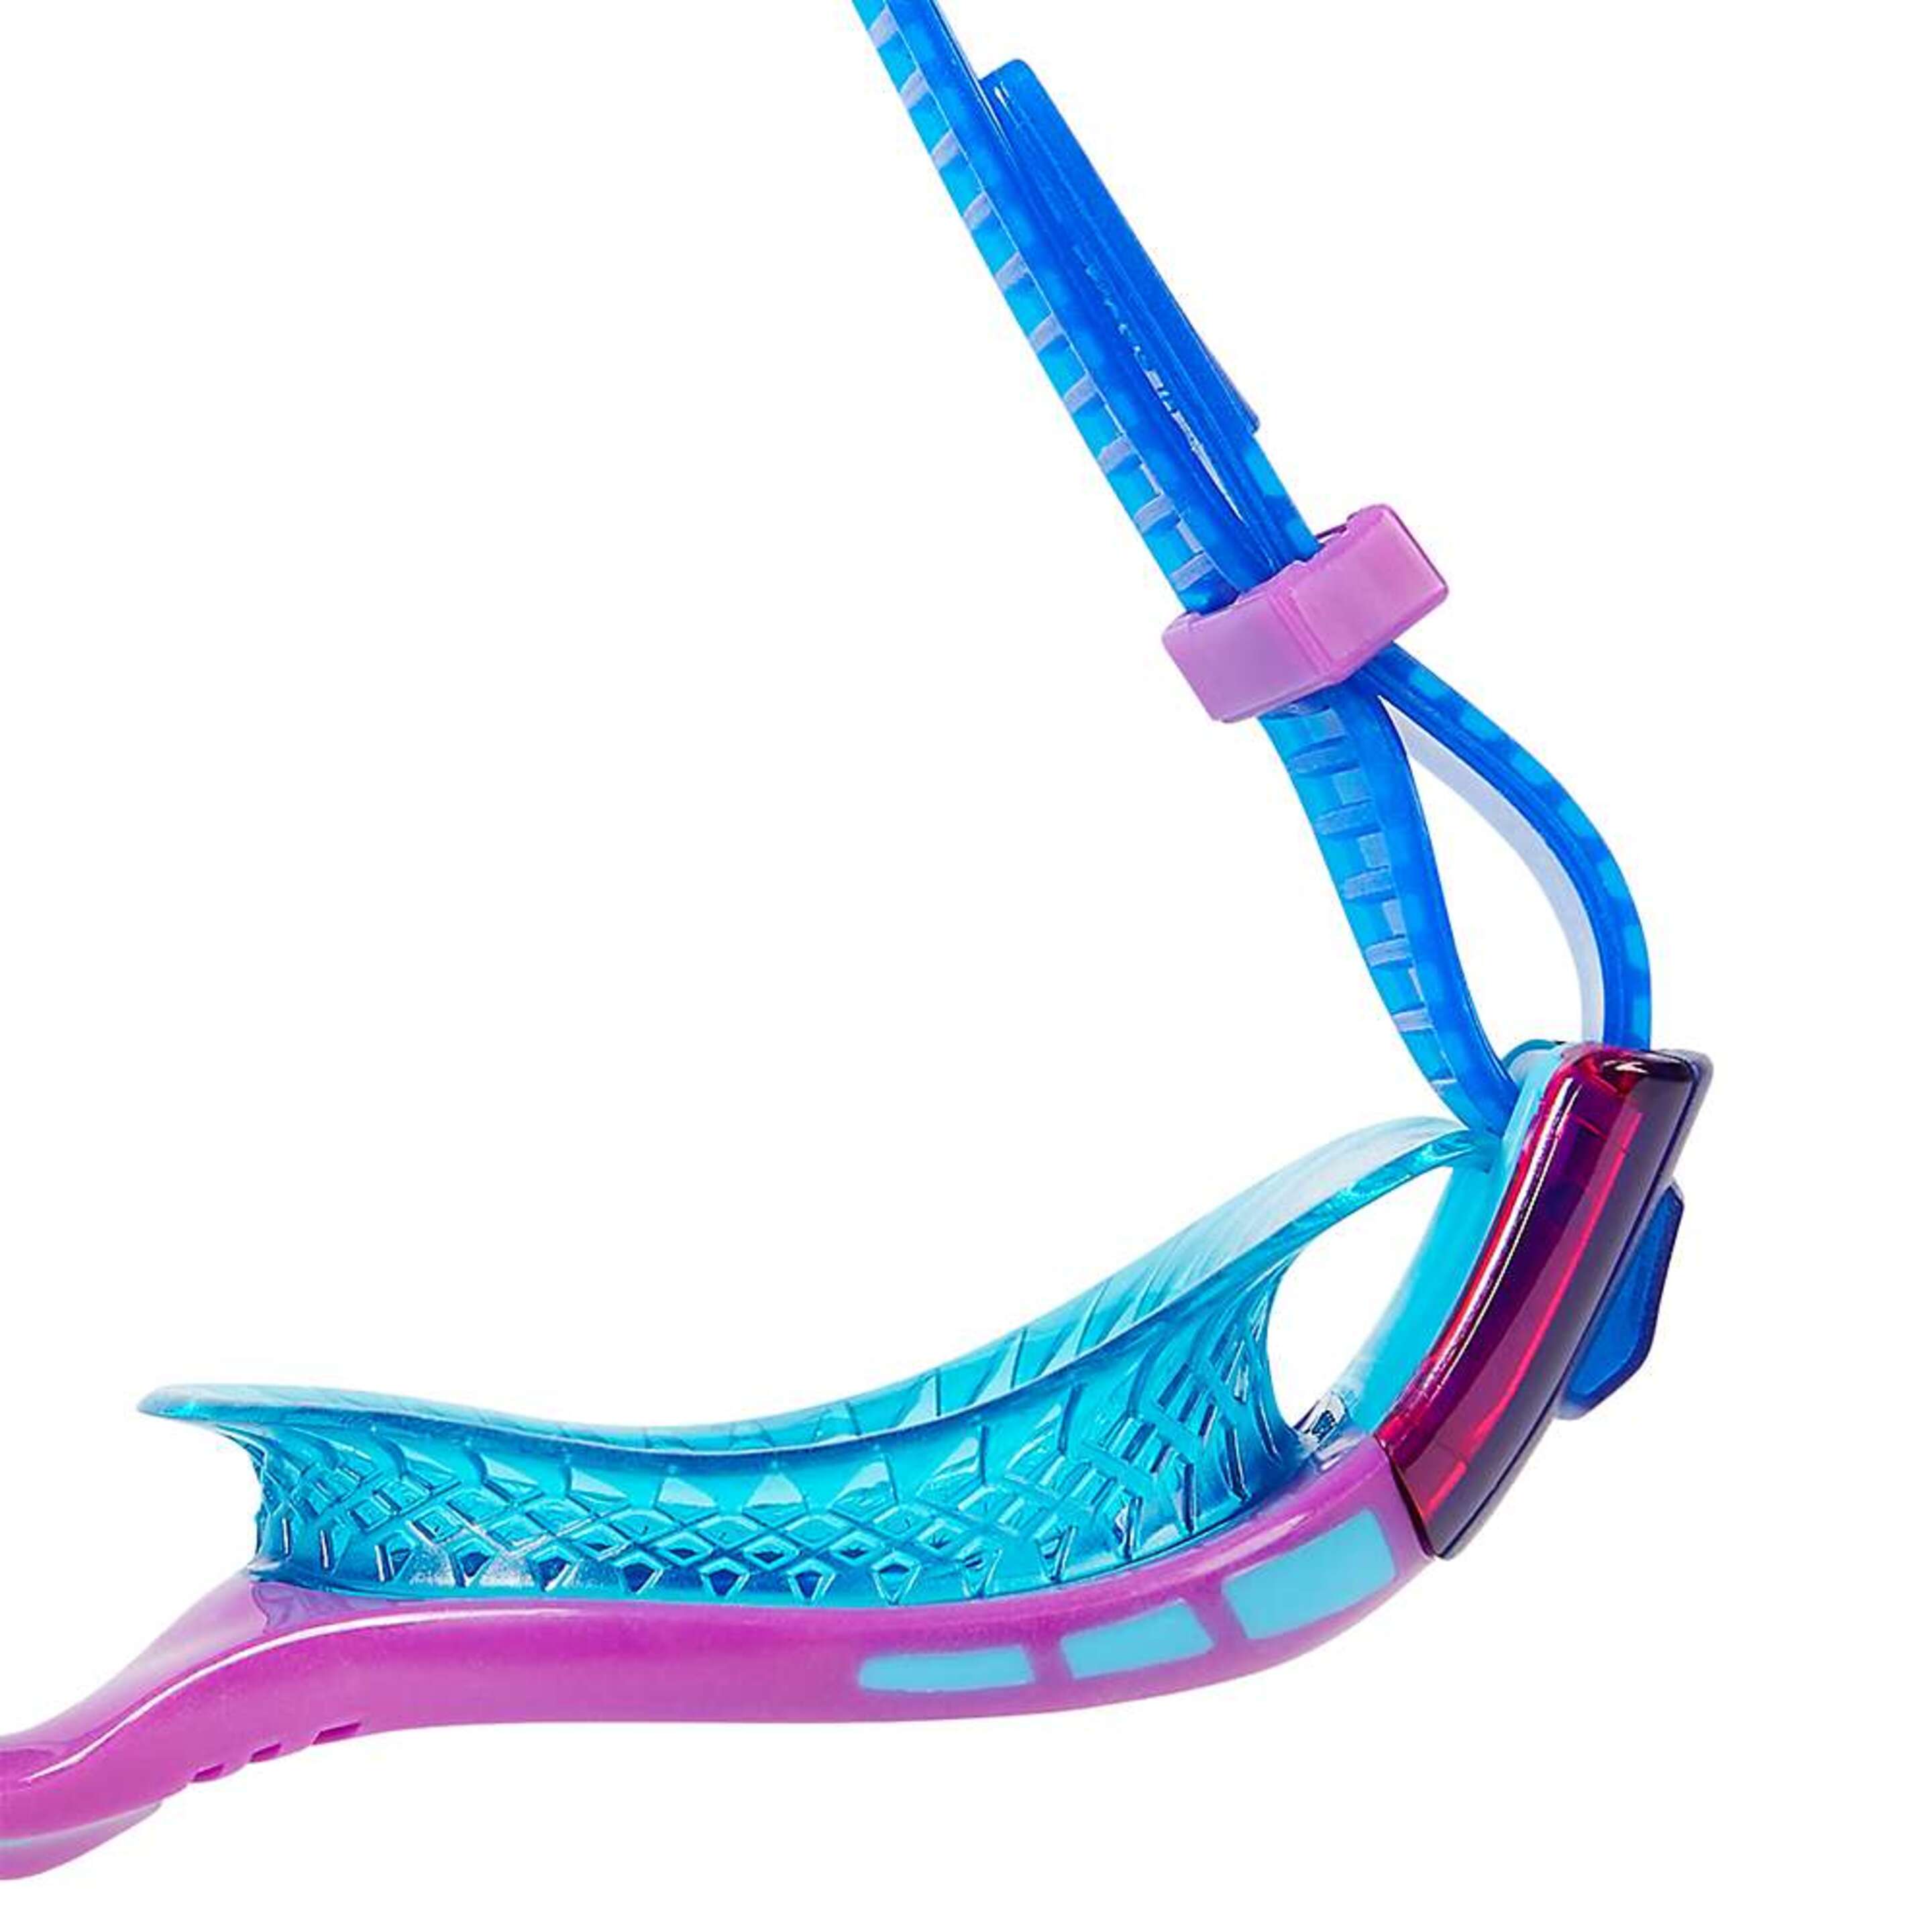 Gafas De Natación Futura Biofuse Flexiseal Para Niños Niñas Speedo (Azul/púrpura/menta)